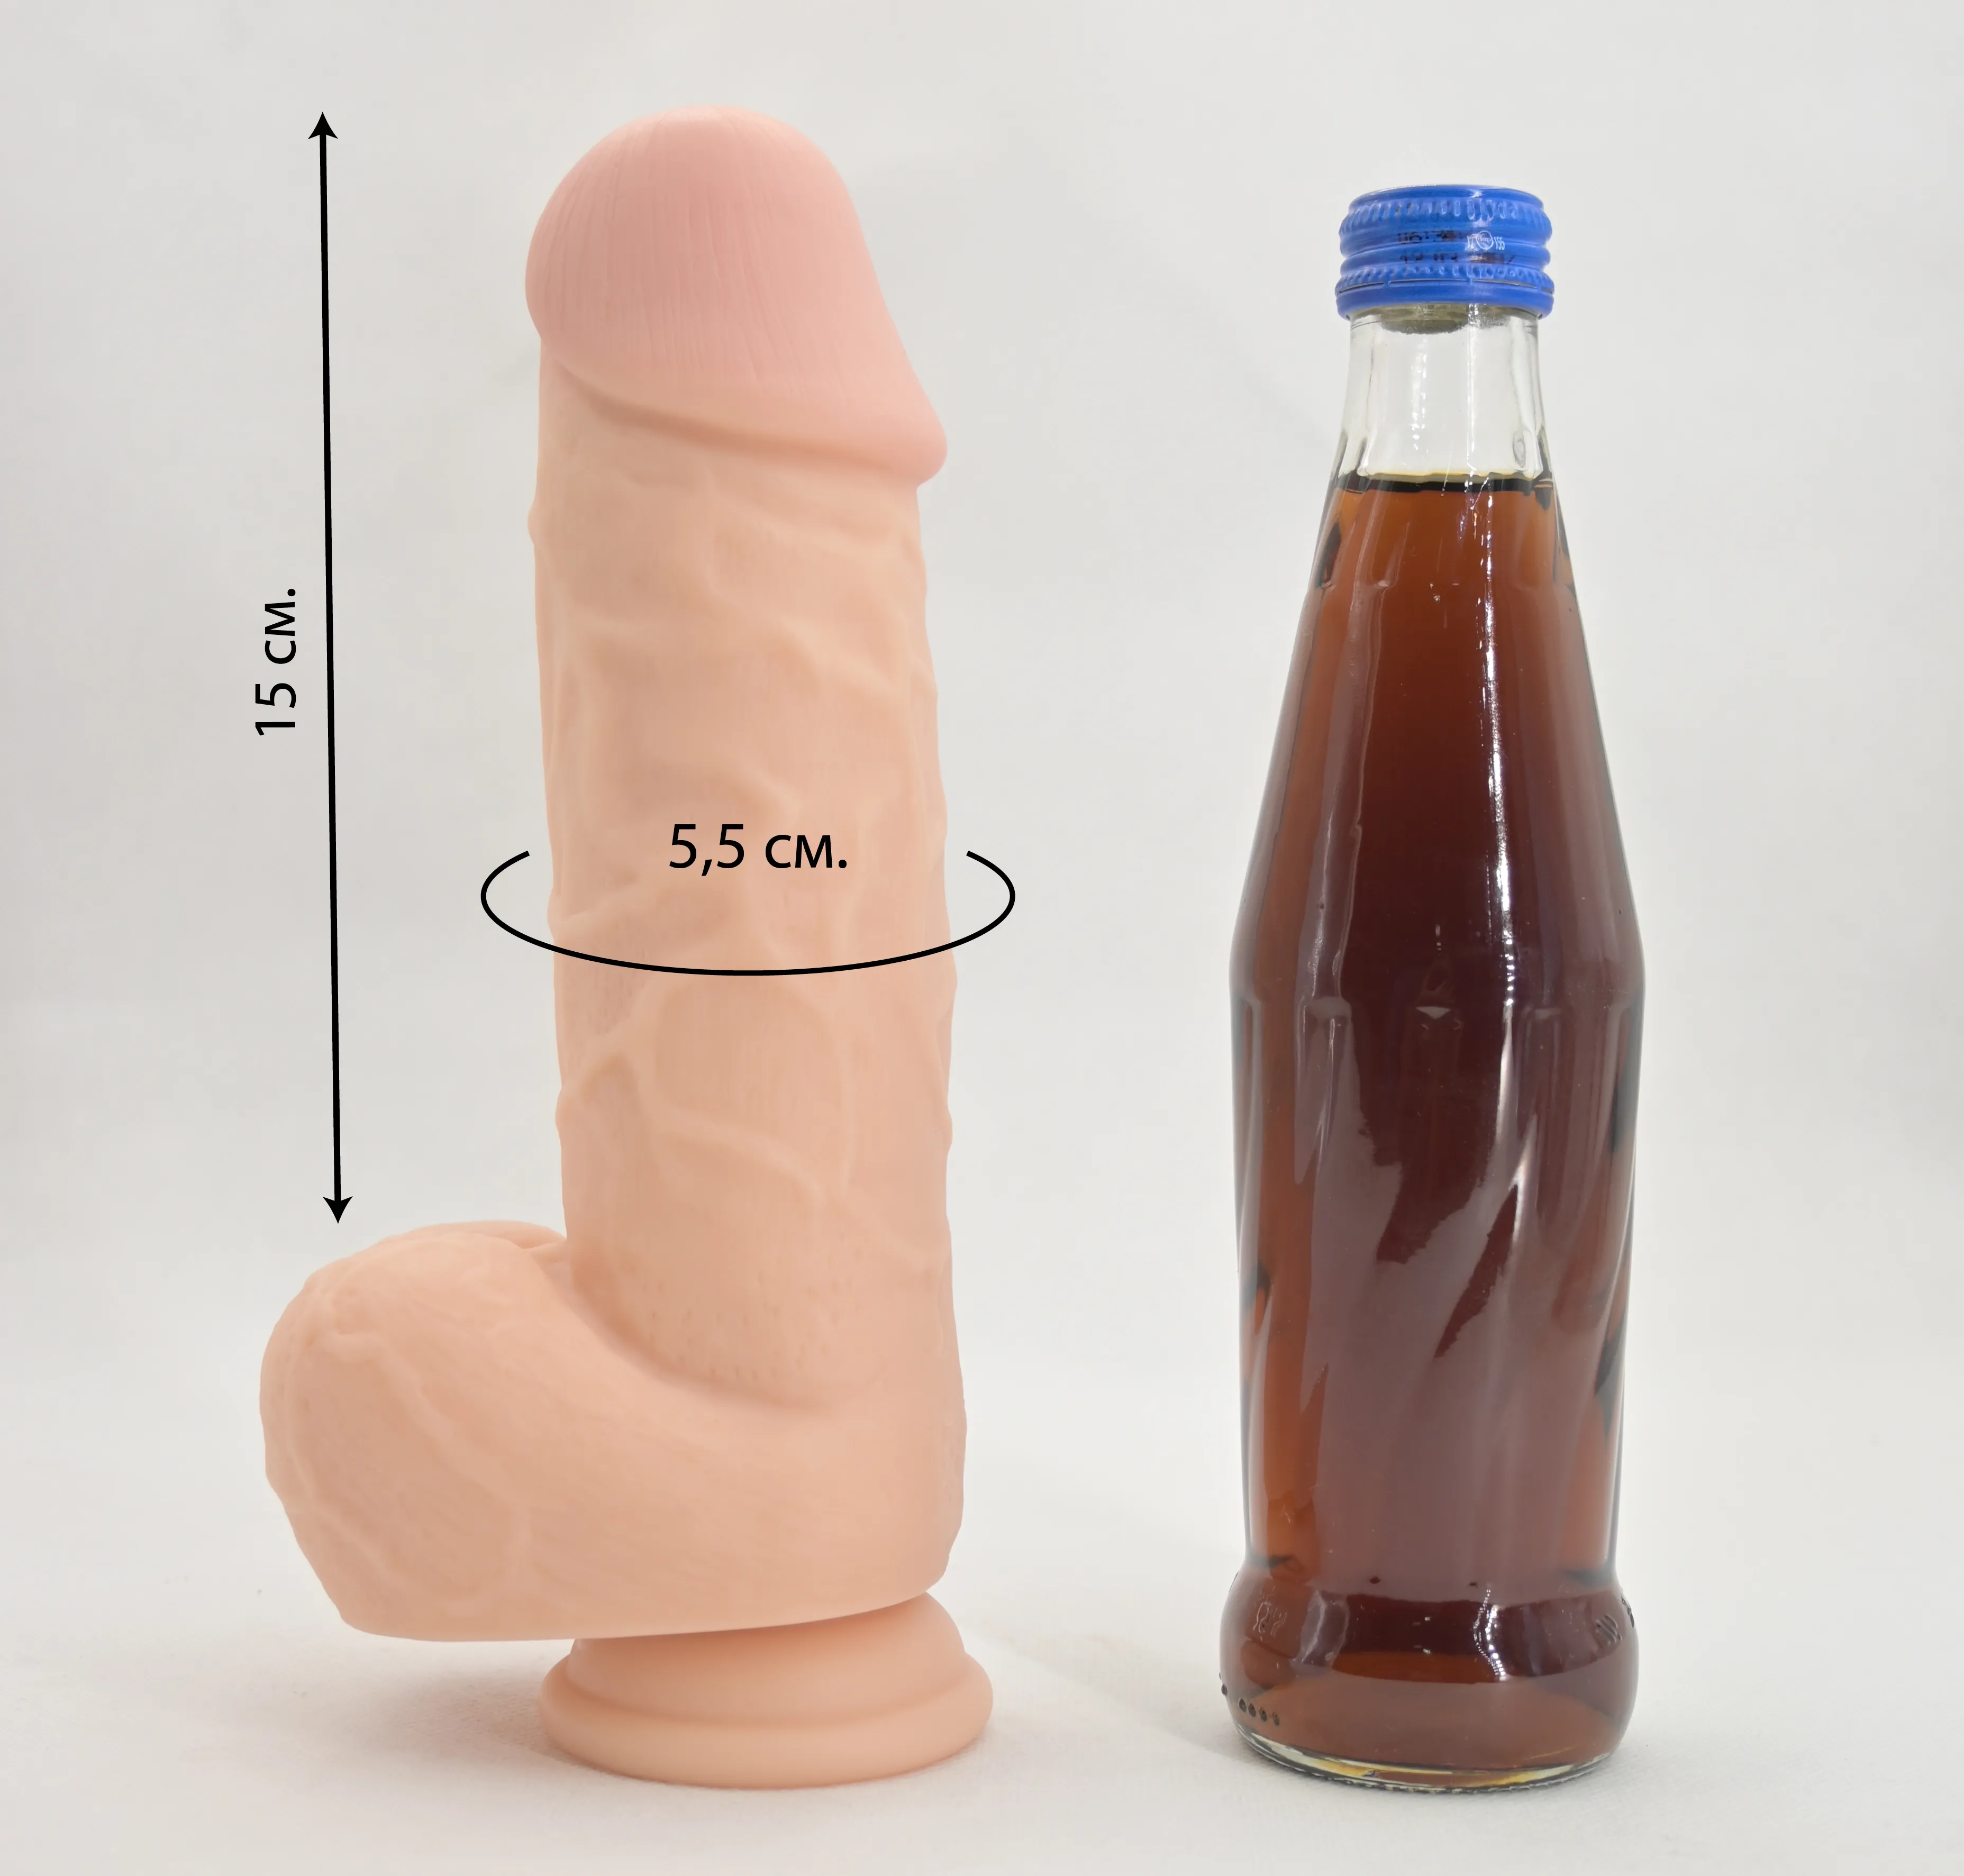 Размеры члена Джо Картера и сравнение со стеклянной бутылкой 0,33 л.